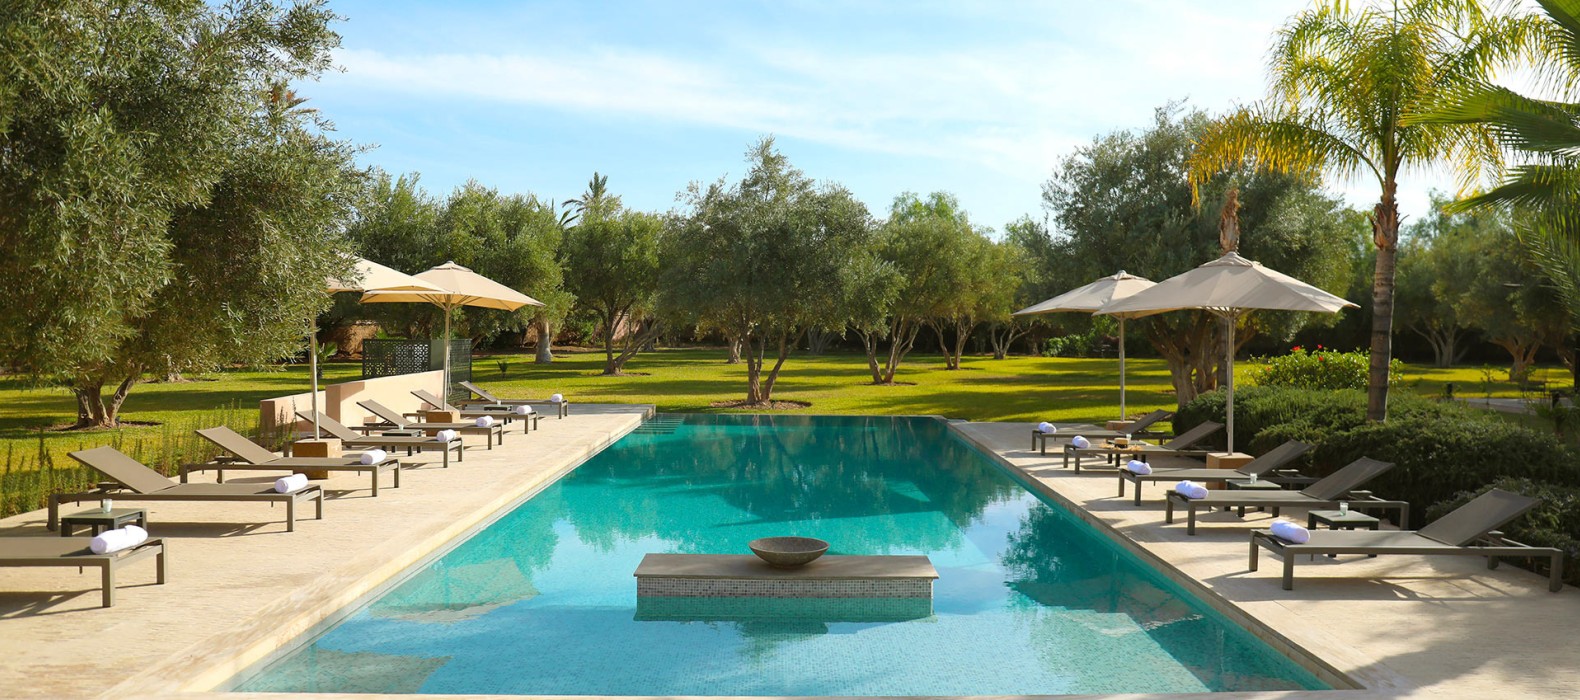 Pool view of Villa Shakir in Marrakech